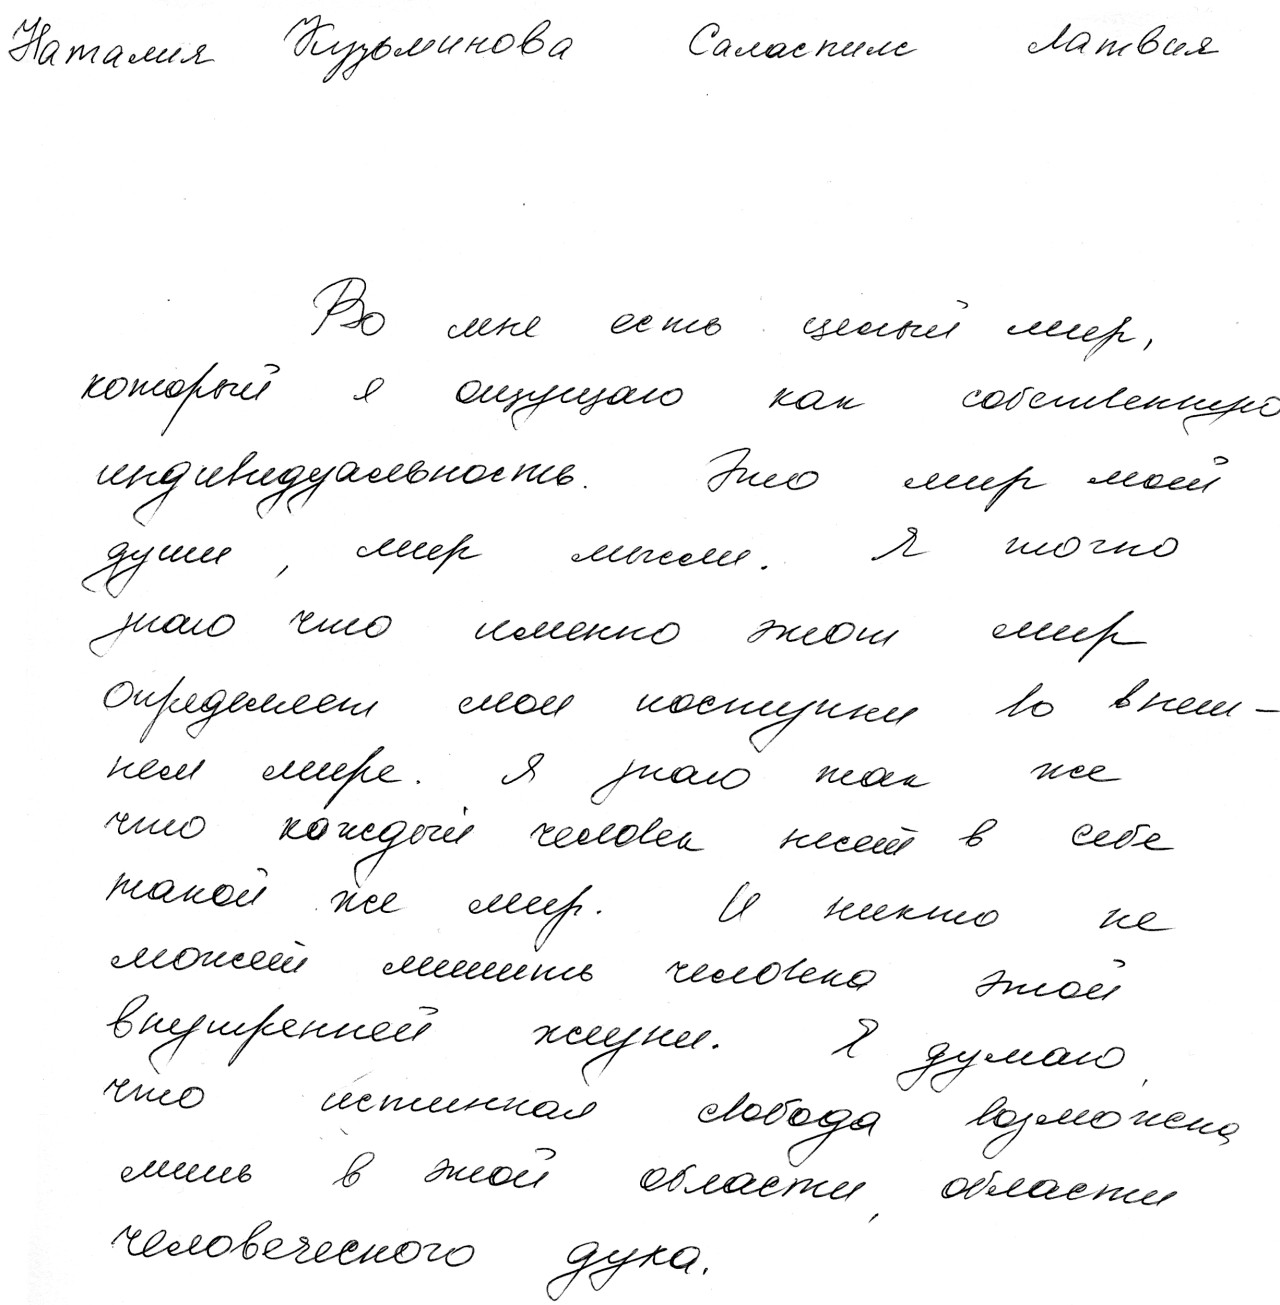 Photo of original, handwritten definition